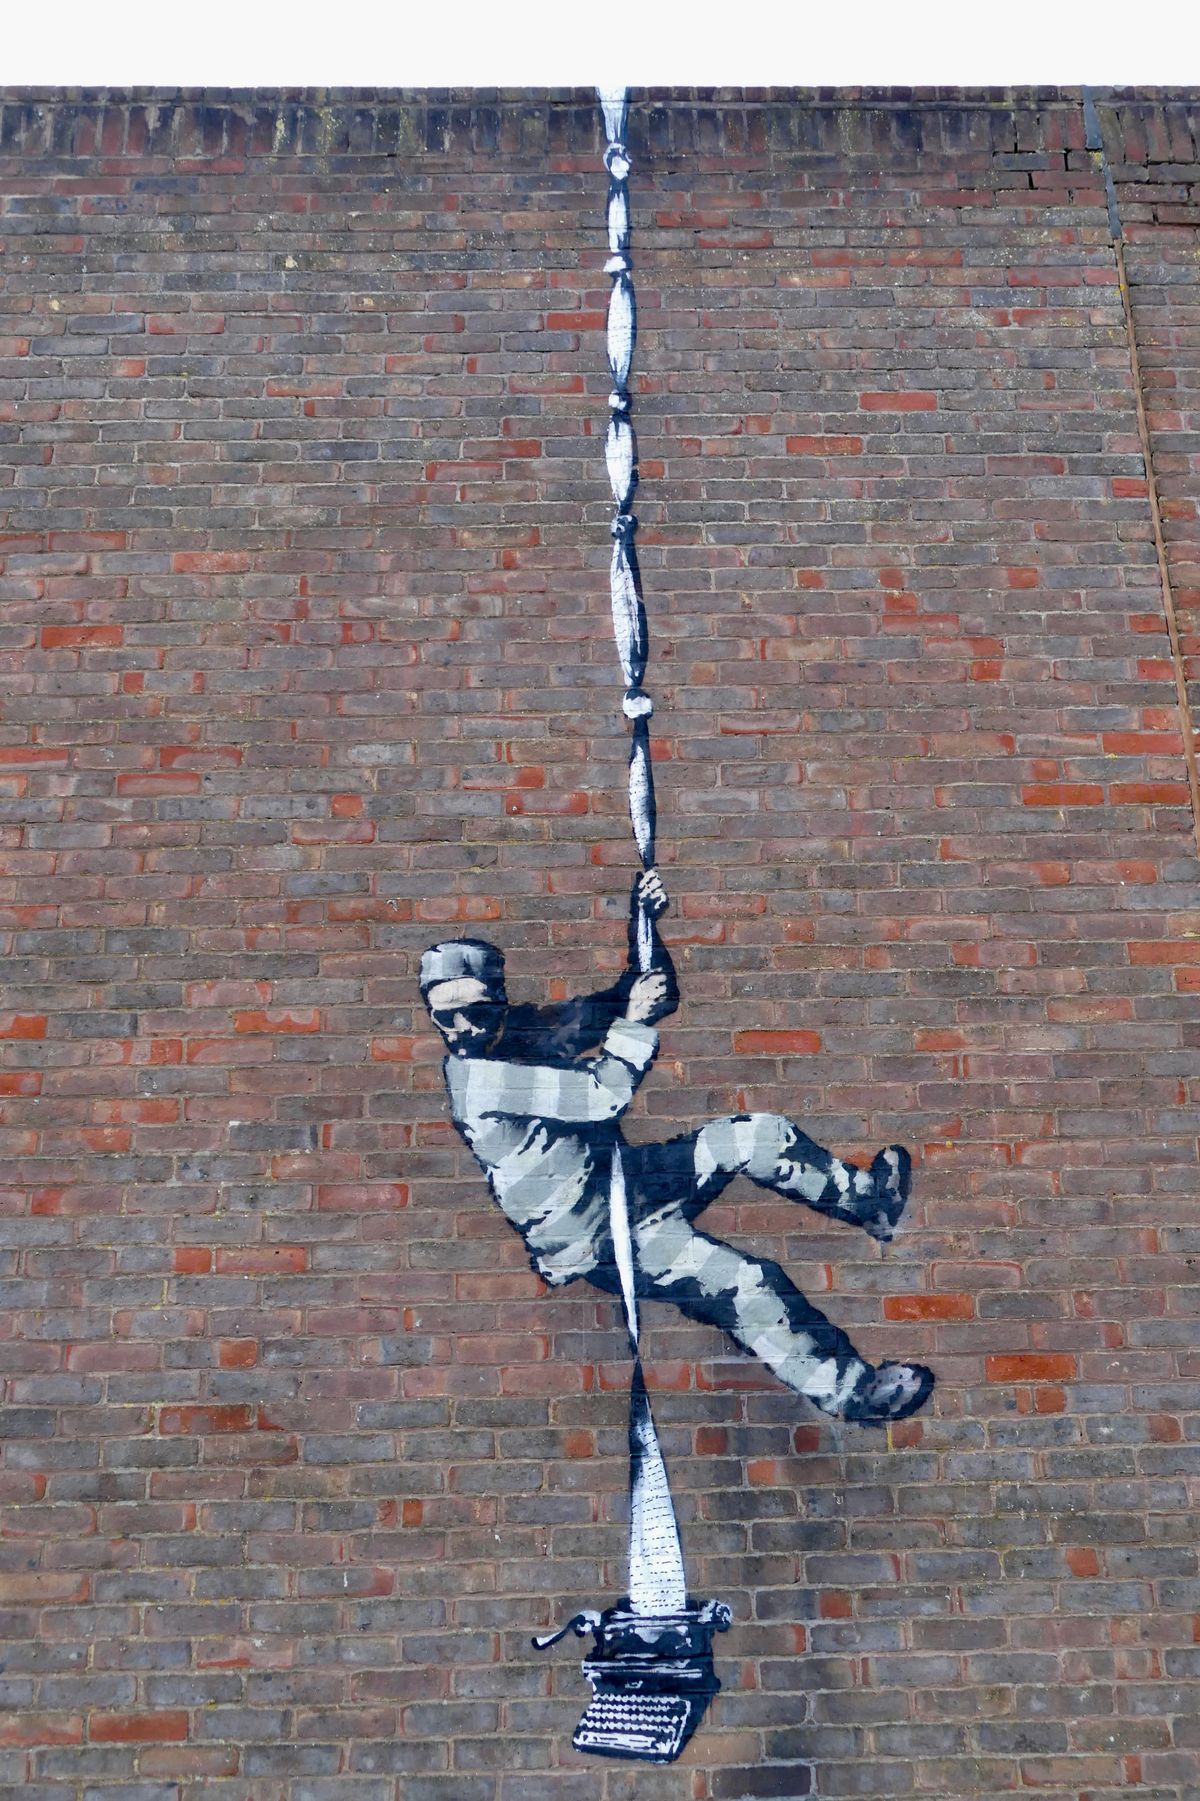 Une nouvelle fresque de Banksy vient d'apparaître sur un mur de prison